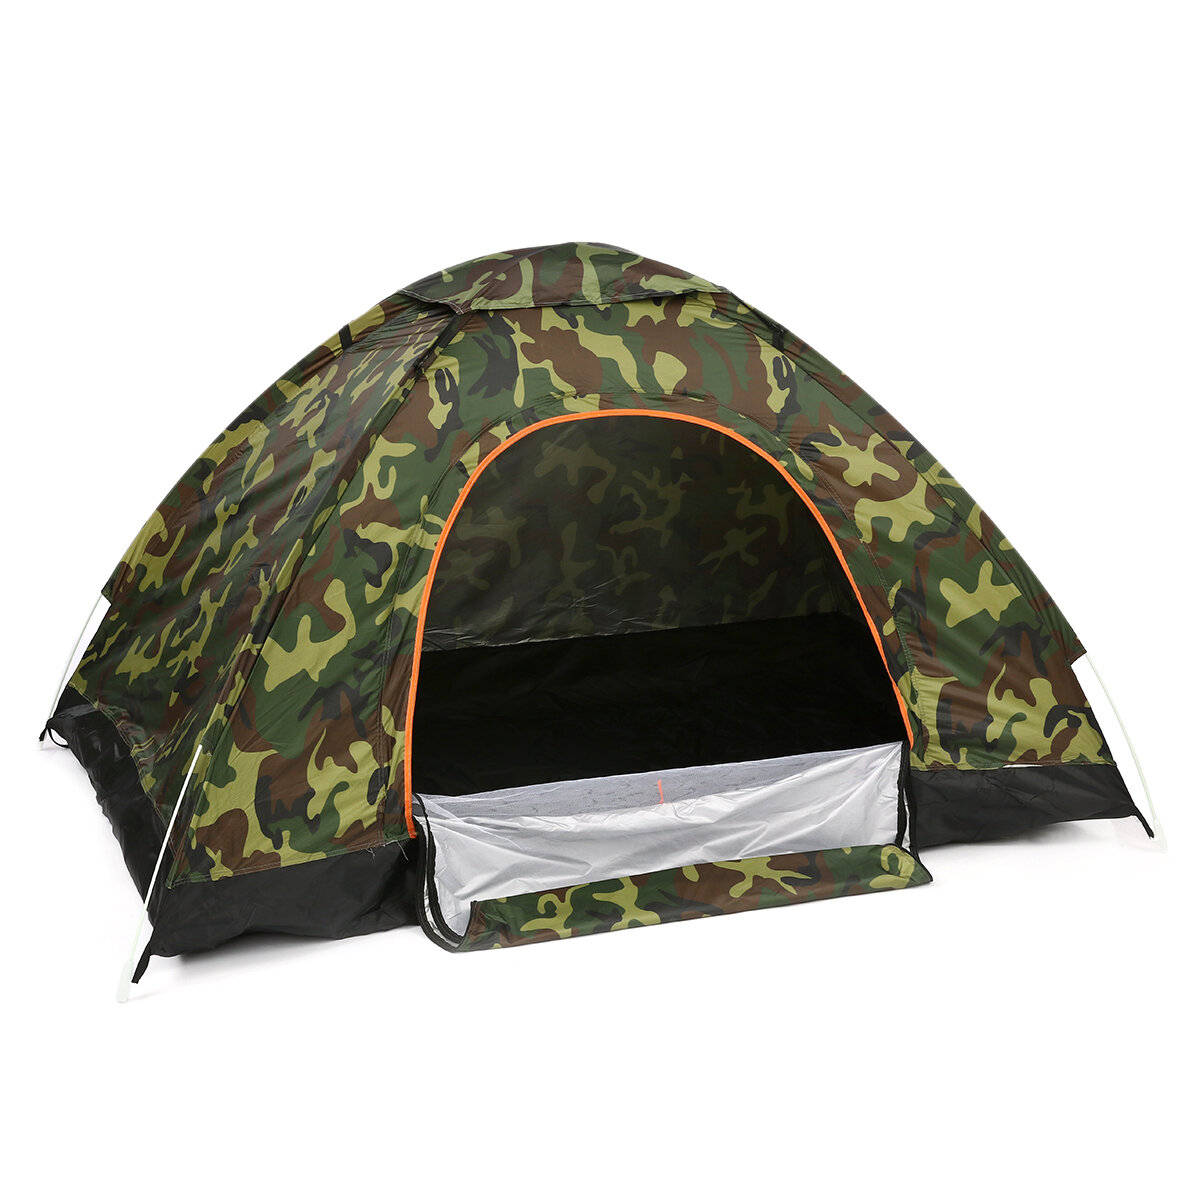 Tente pliante à double porte portable pour 2-3 personnes, imperméable et entièrement automatique, idéale pour le camping, la randonnée et les voyages, avec abri solaire.